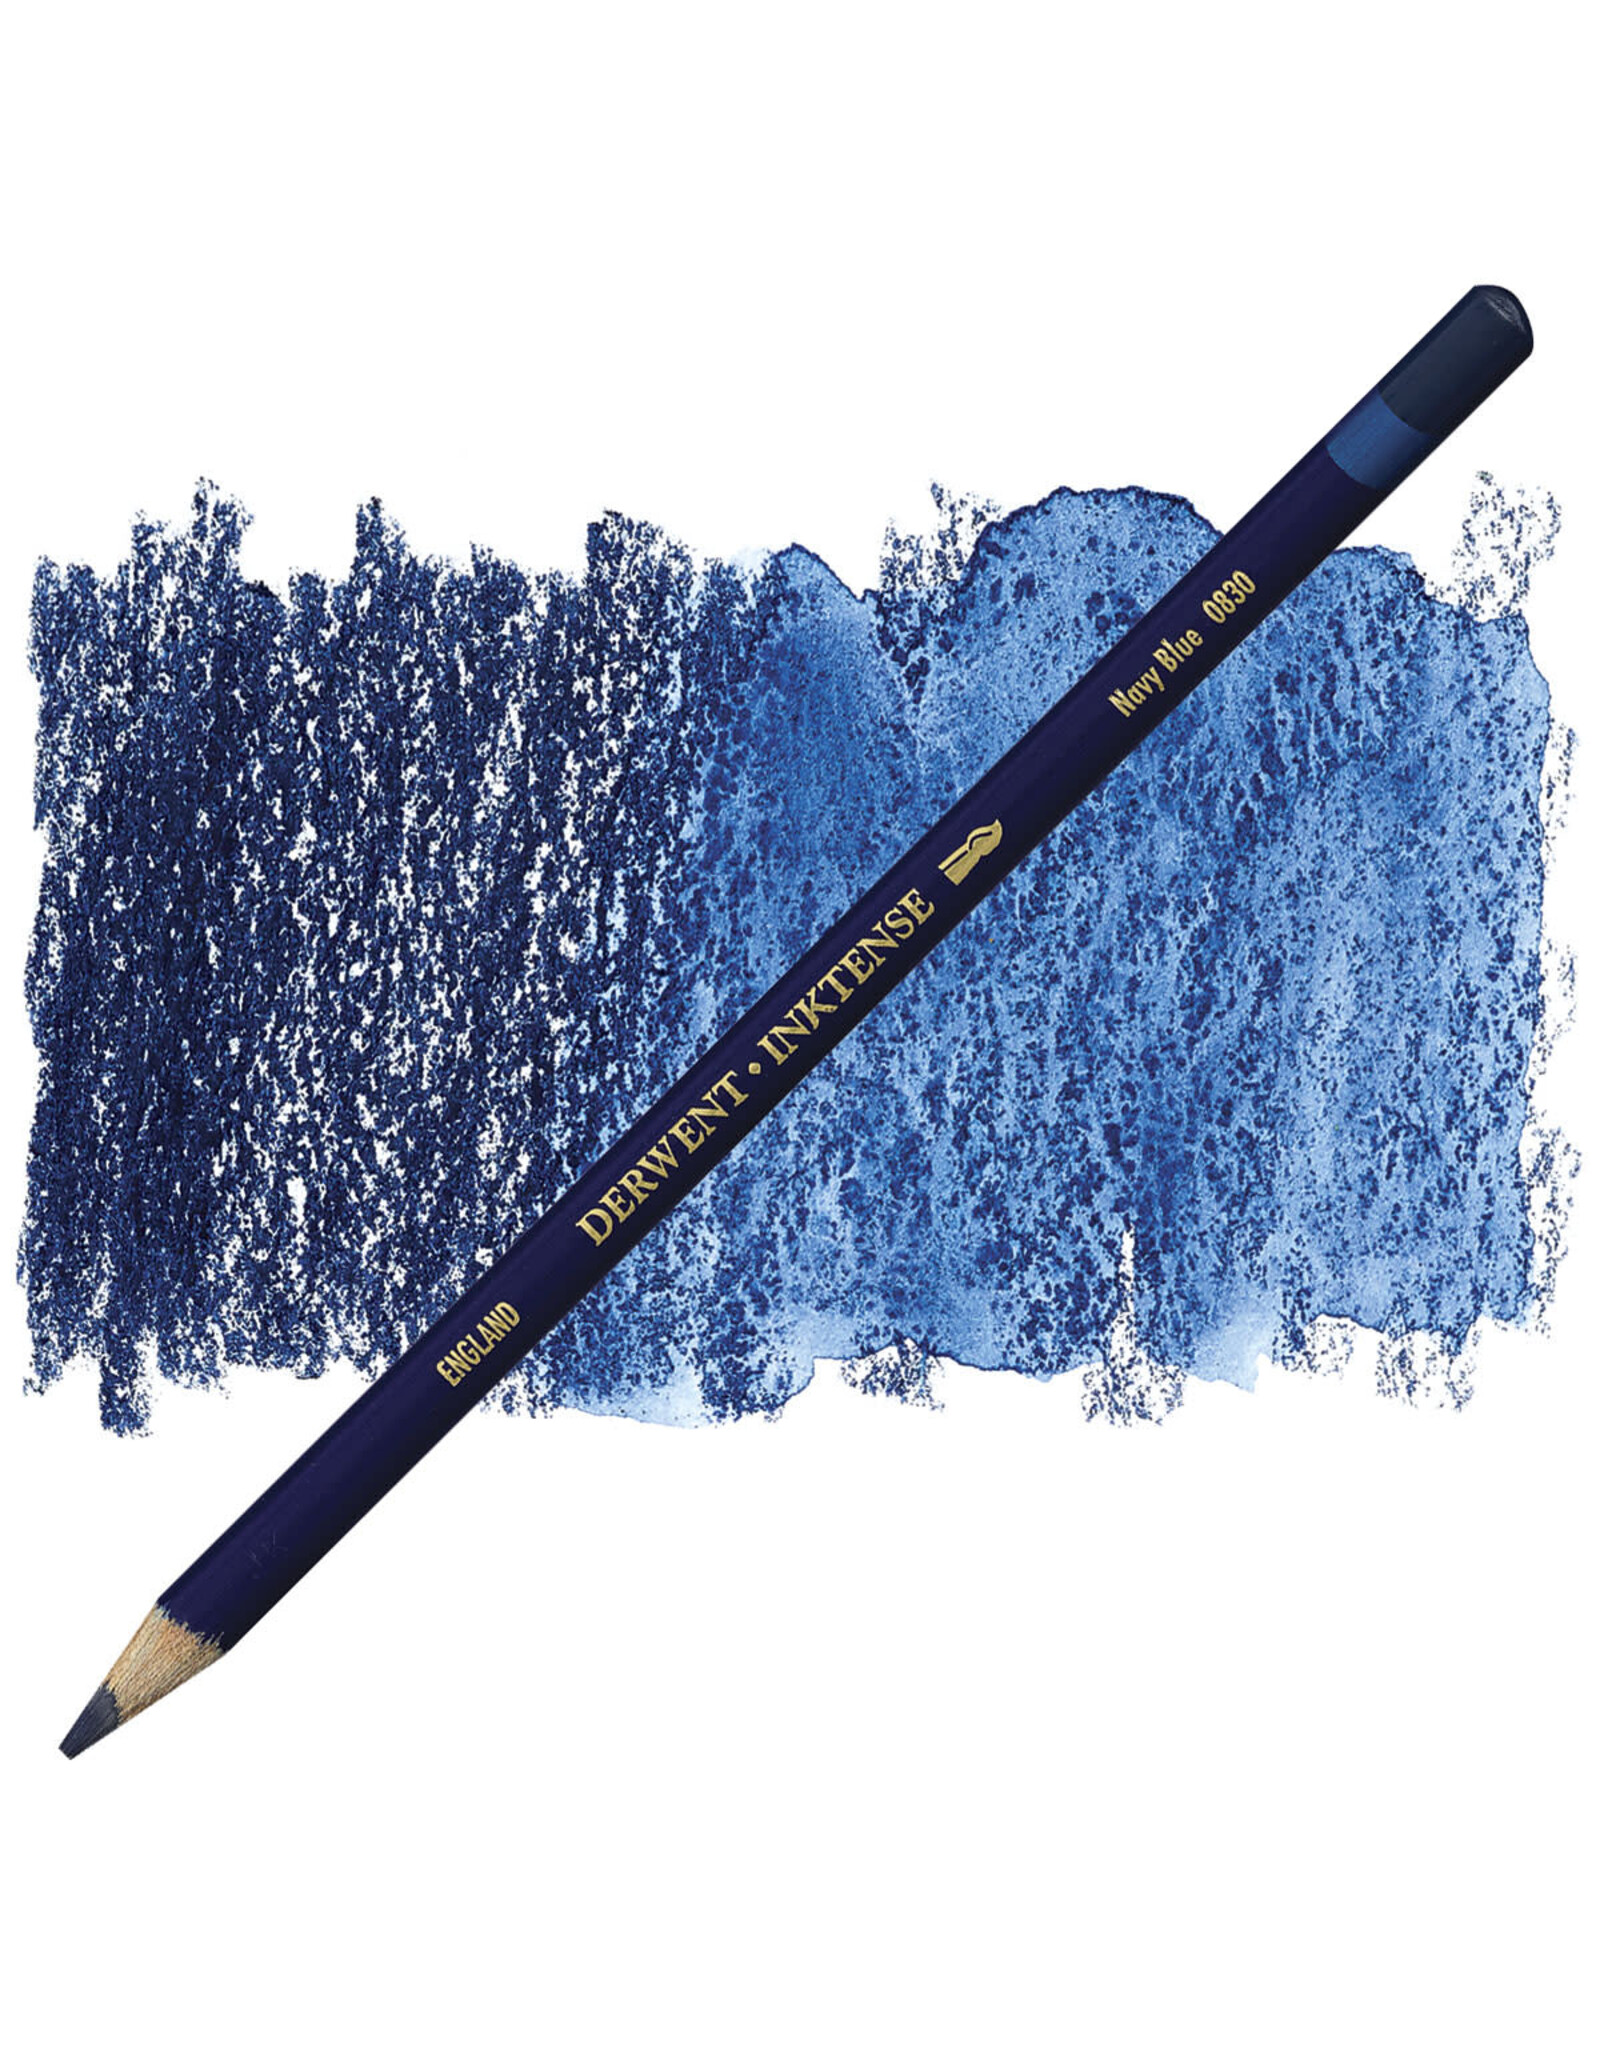 DERWENT INKTENSE PENCIL - NAVY BLUE